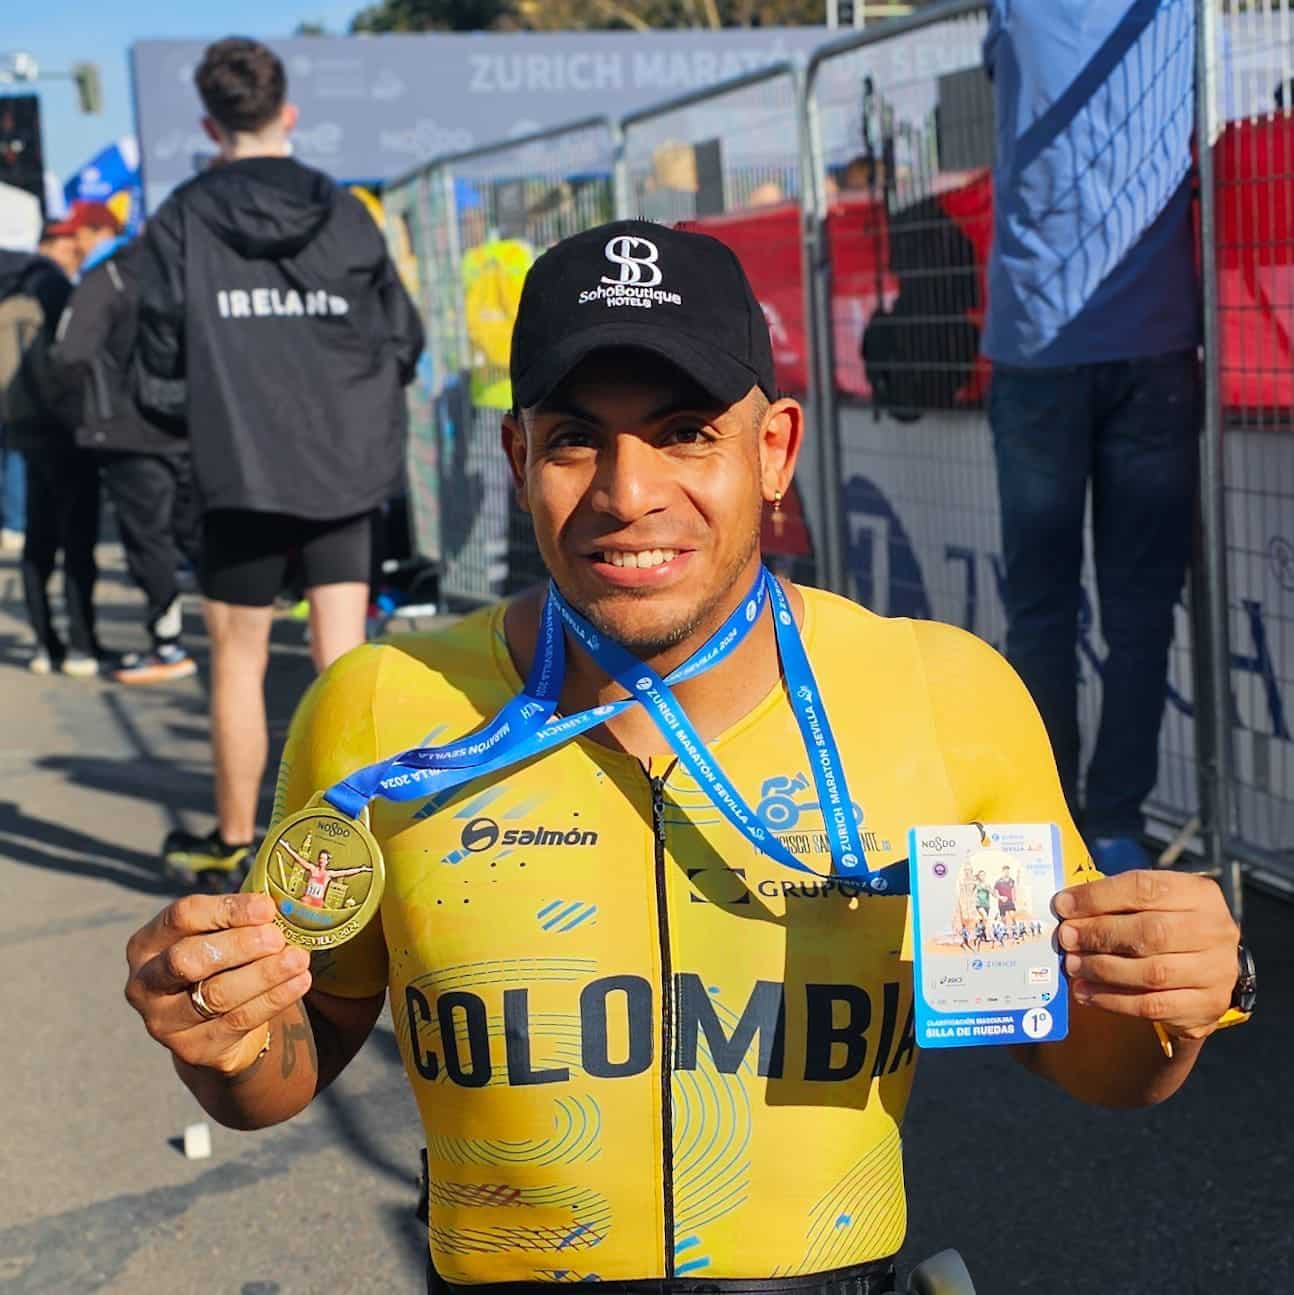 Colombiano ganó el Zurich Maratón de Sevilla y suma en camino a los Paralímpicos